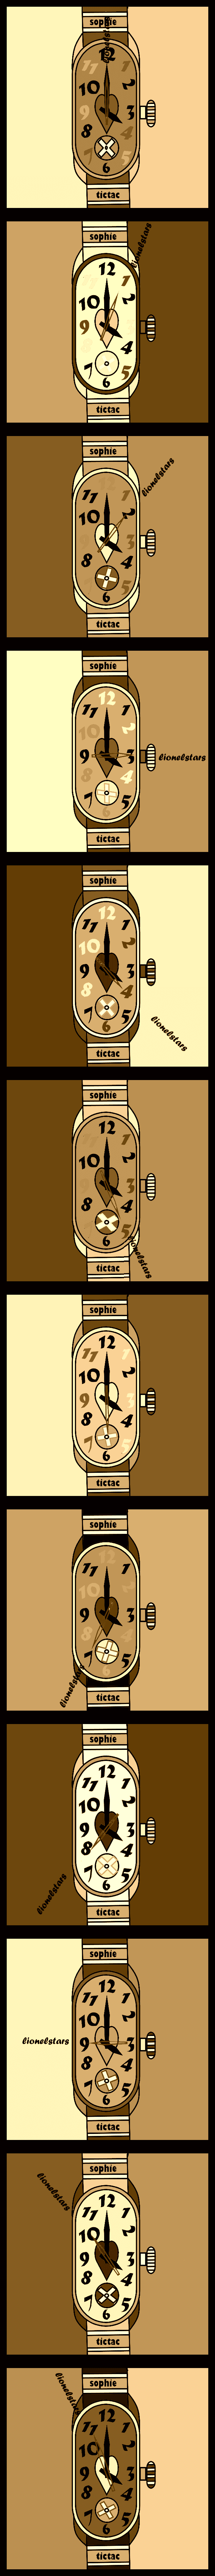 la montre sophie#2